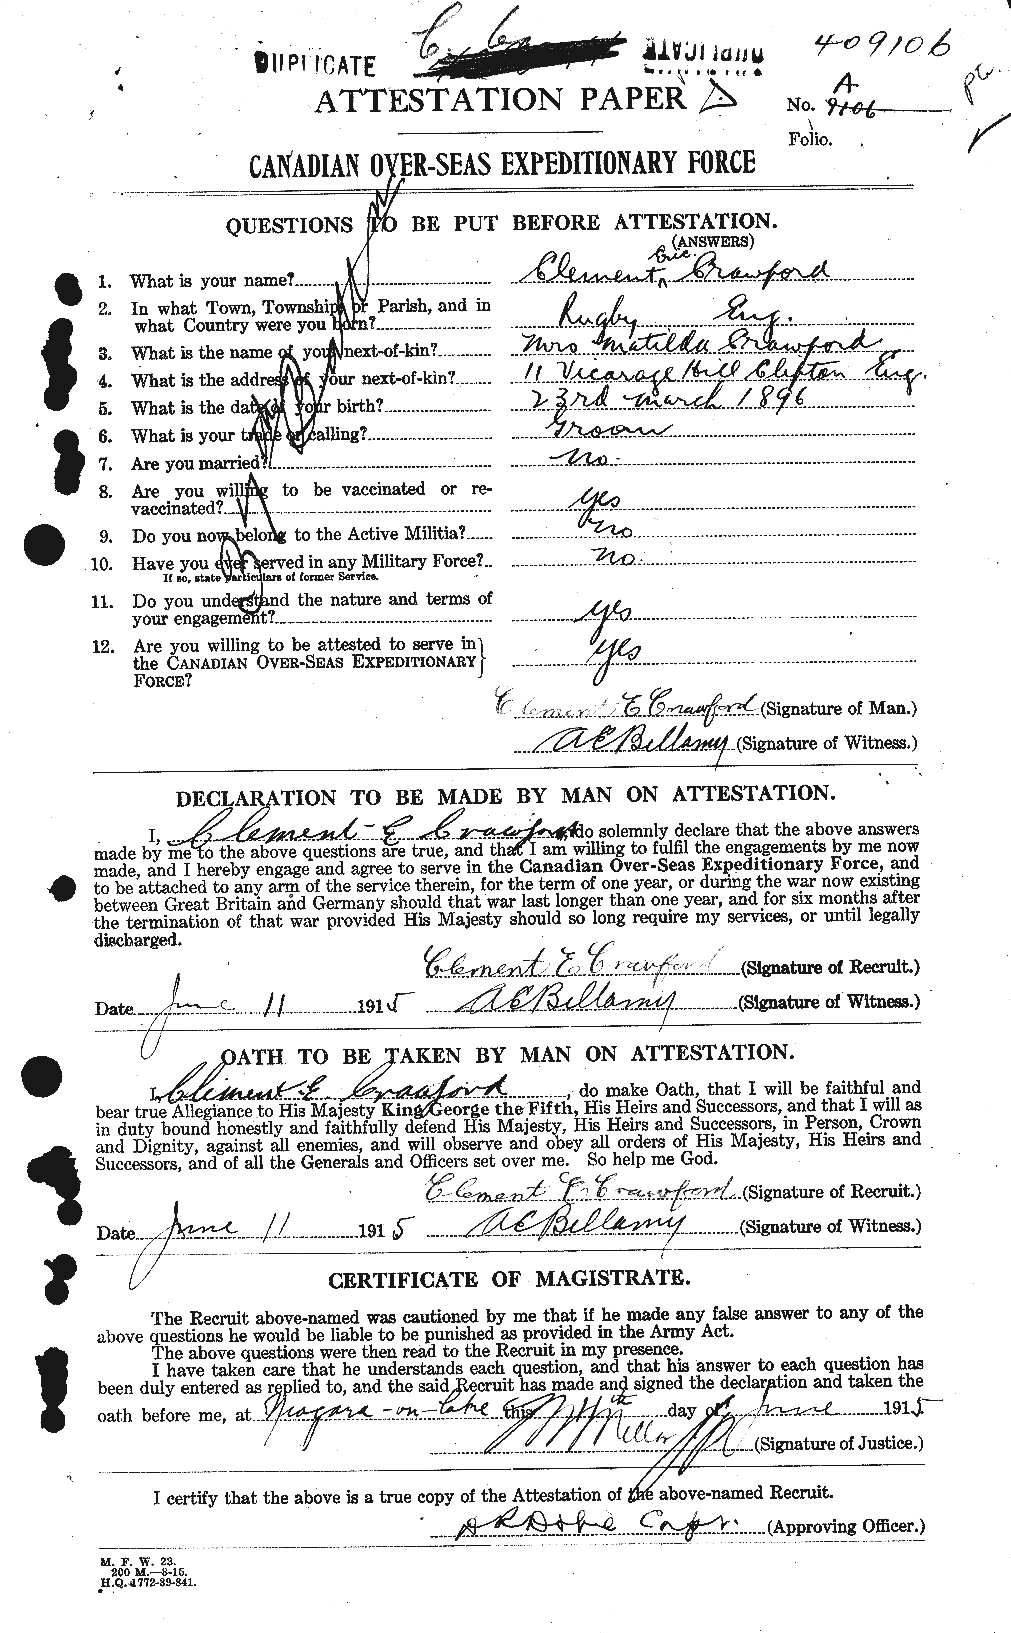 Dossiers du Personnel de la Première Guerre mondiale - CEC 060829a